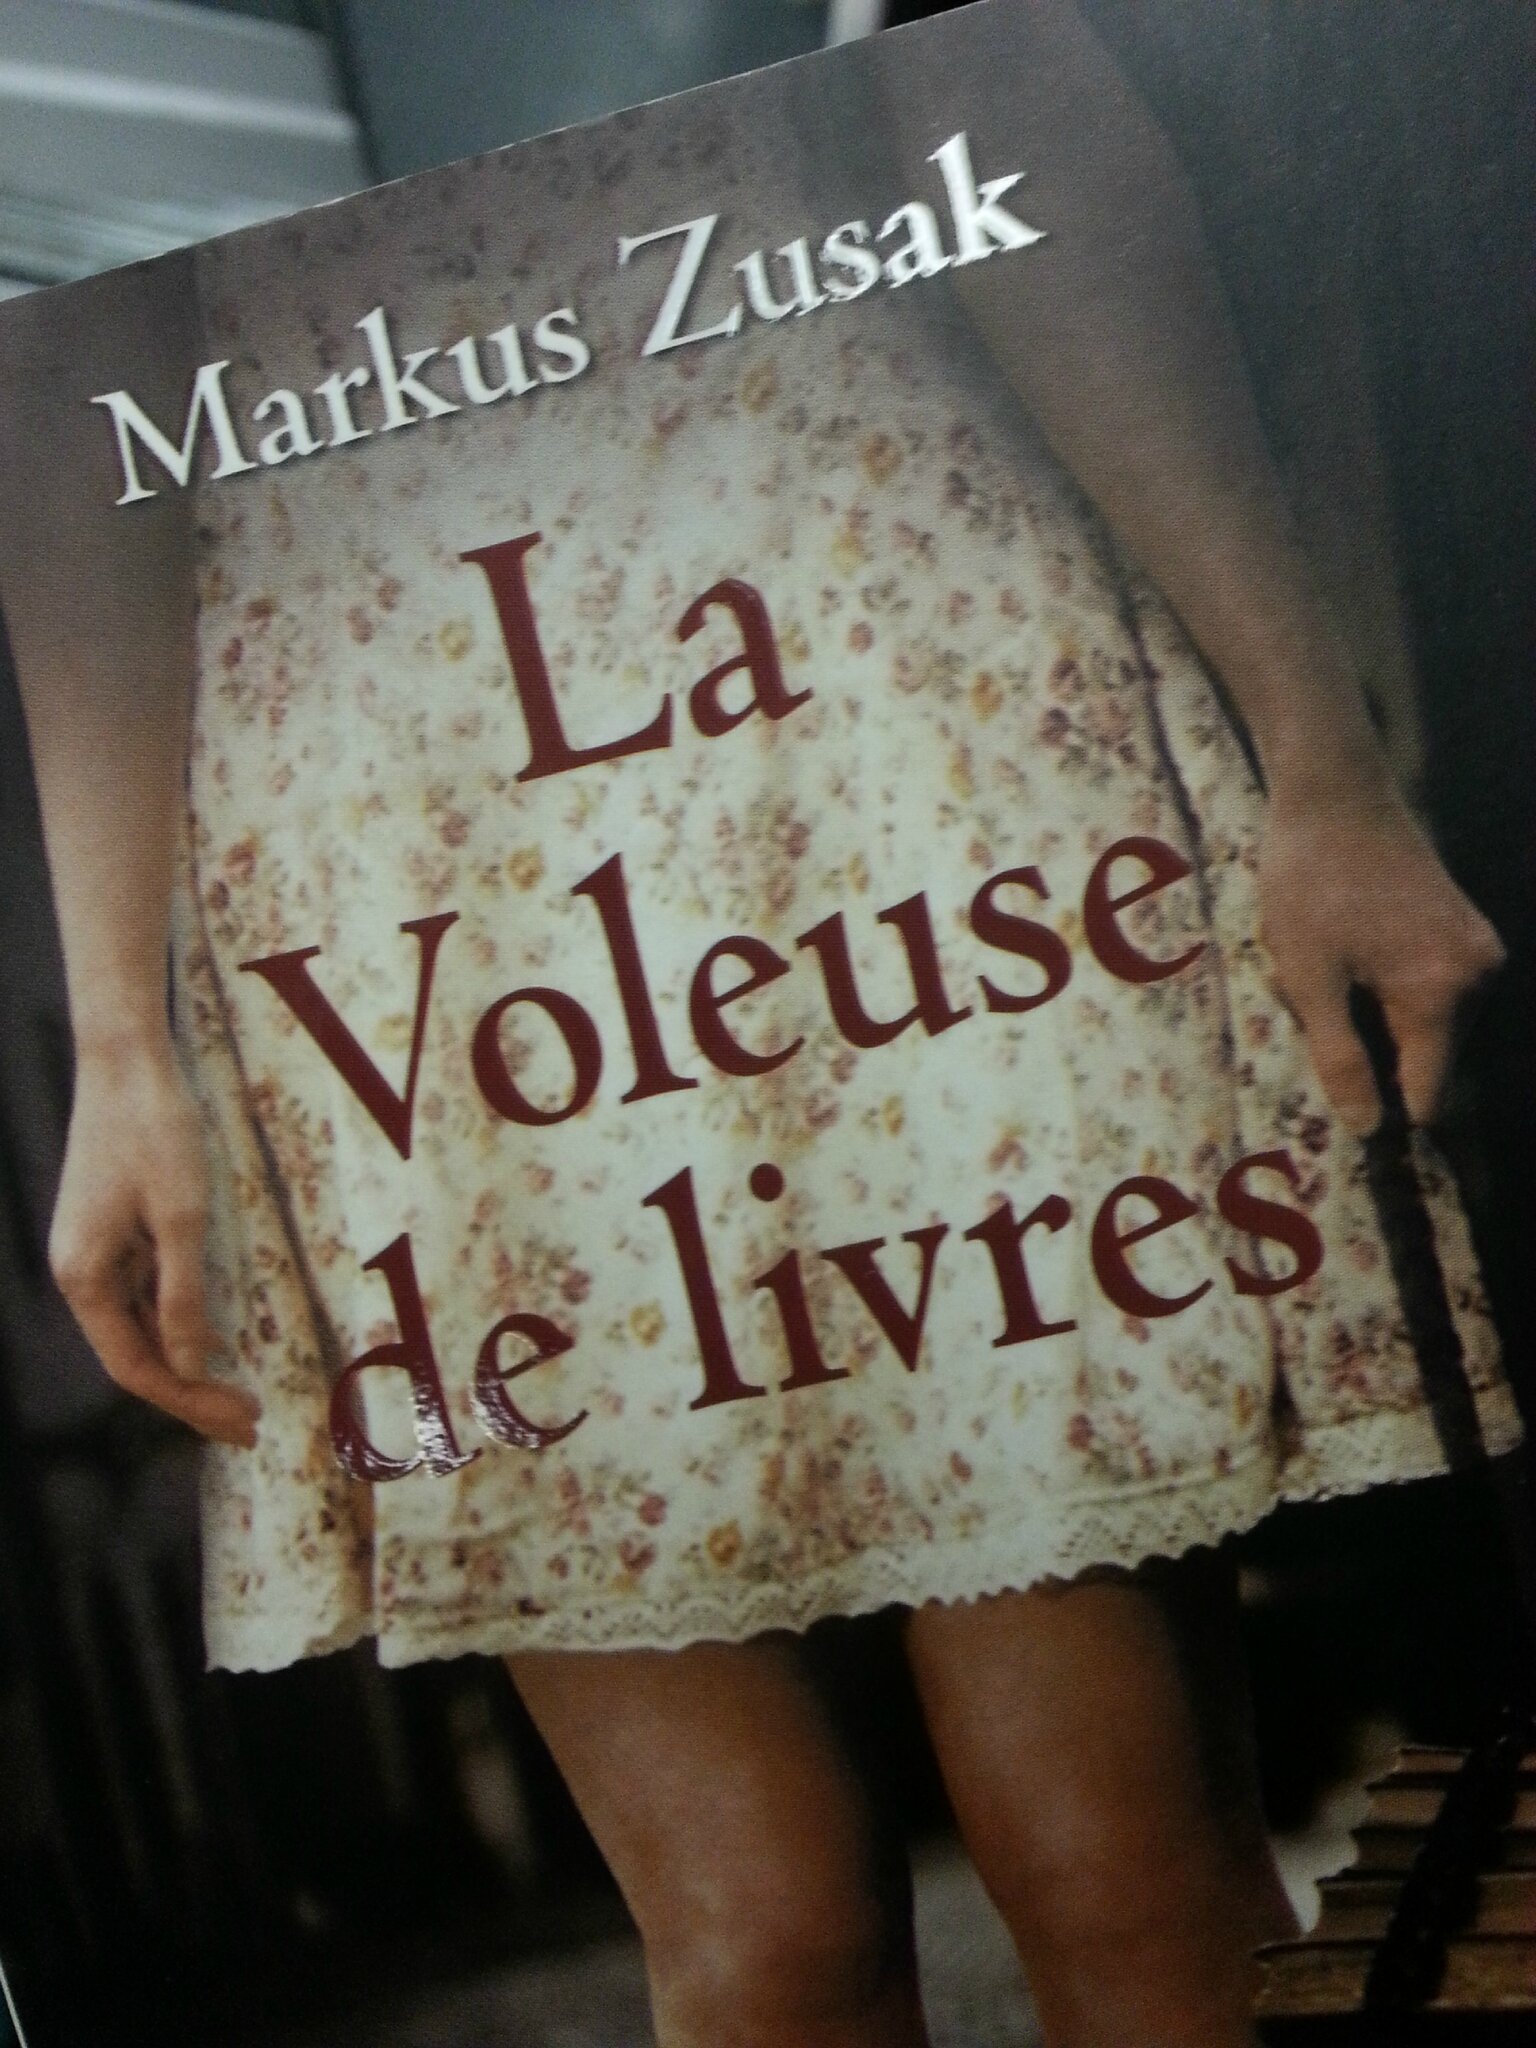 La voleuse de livres, Markus Zusak - Laurie lit